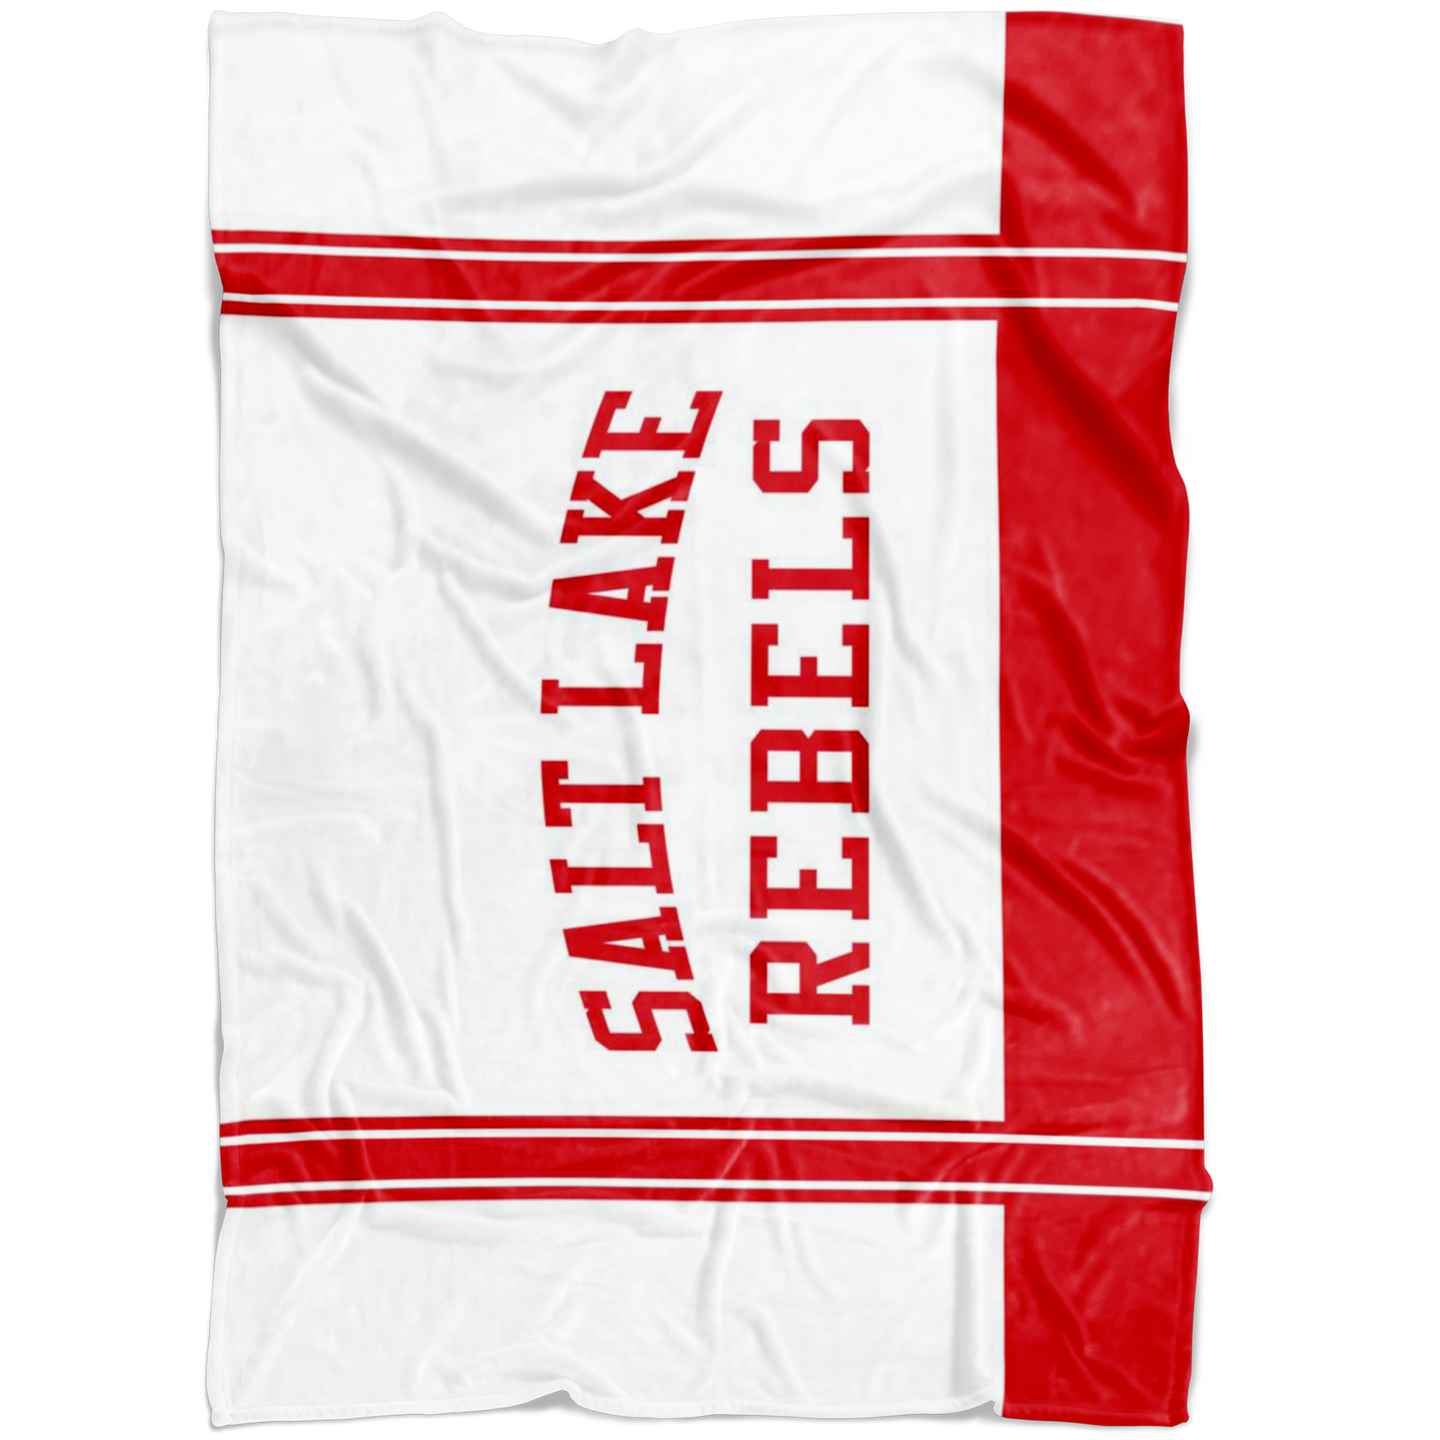 Classic White Salt Lake Rebels Sherpa Blanket